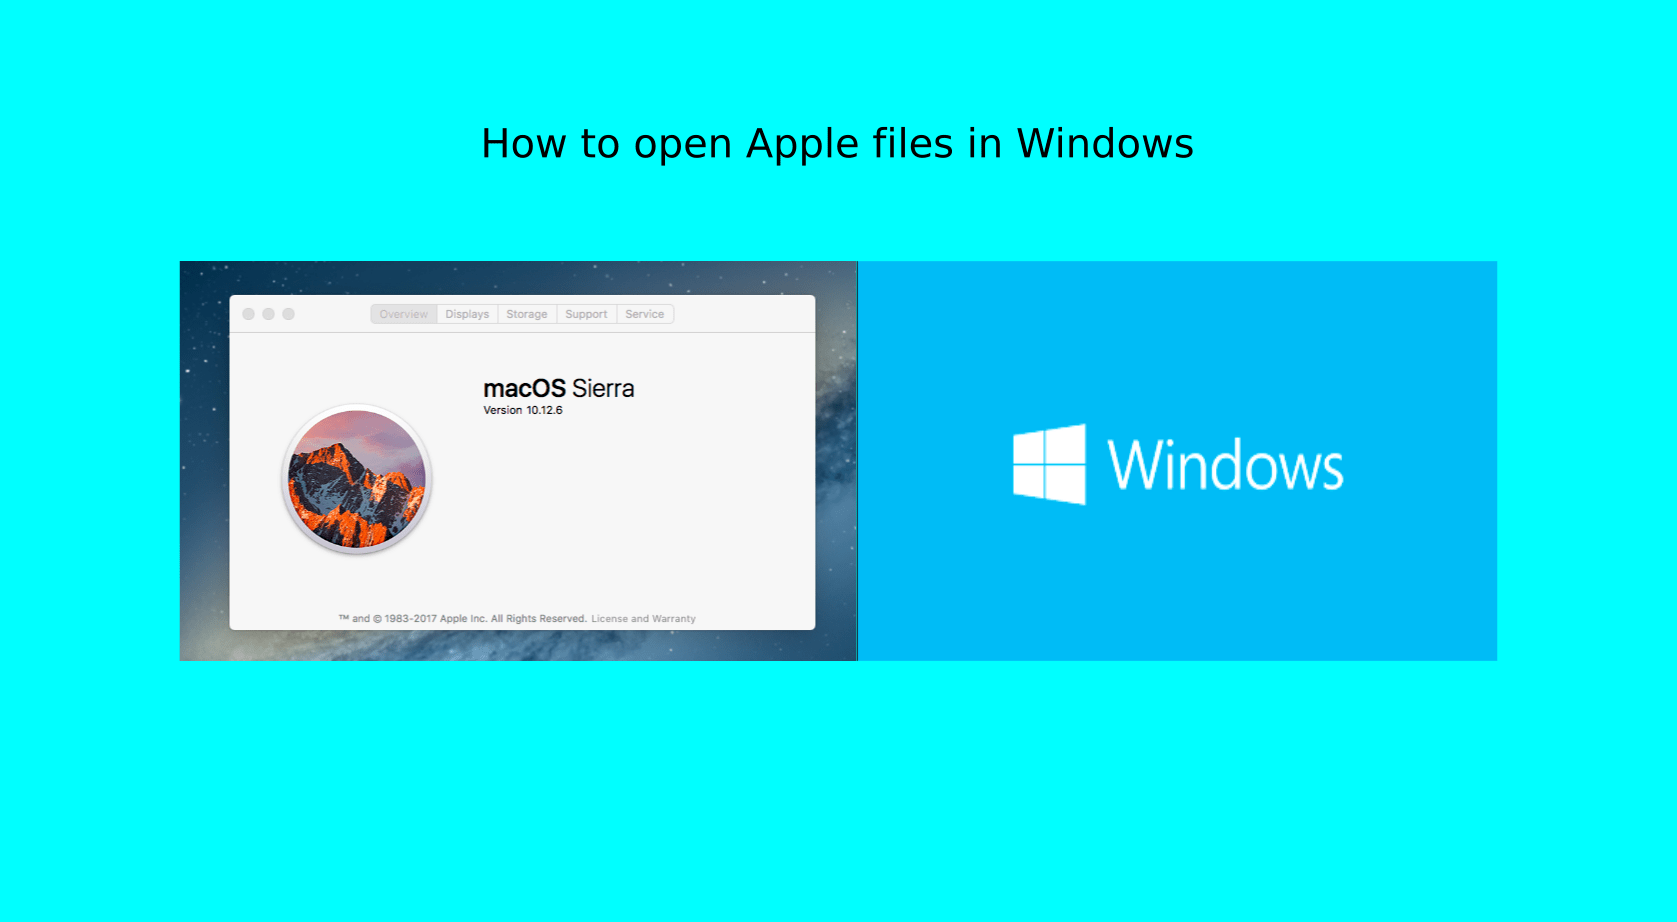 открыть файлы Apple в windows